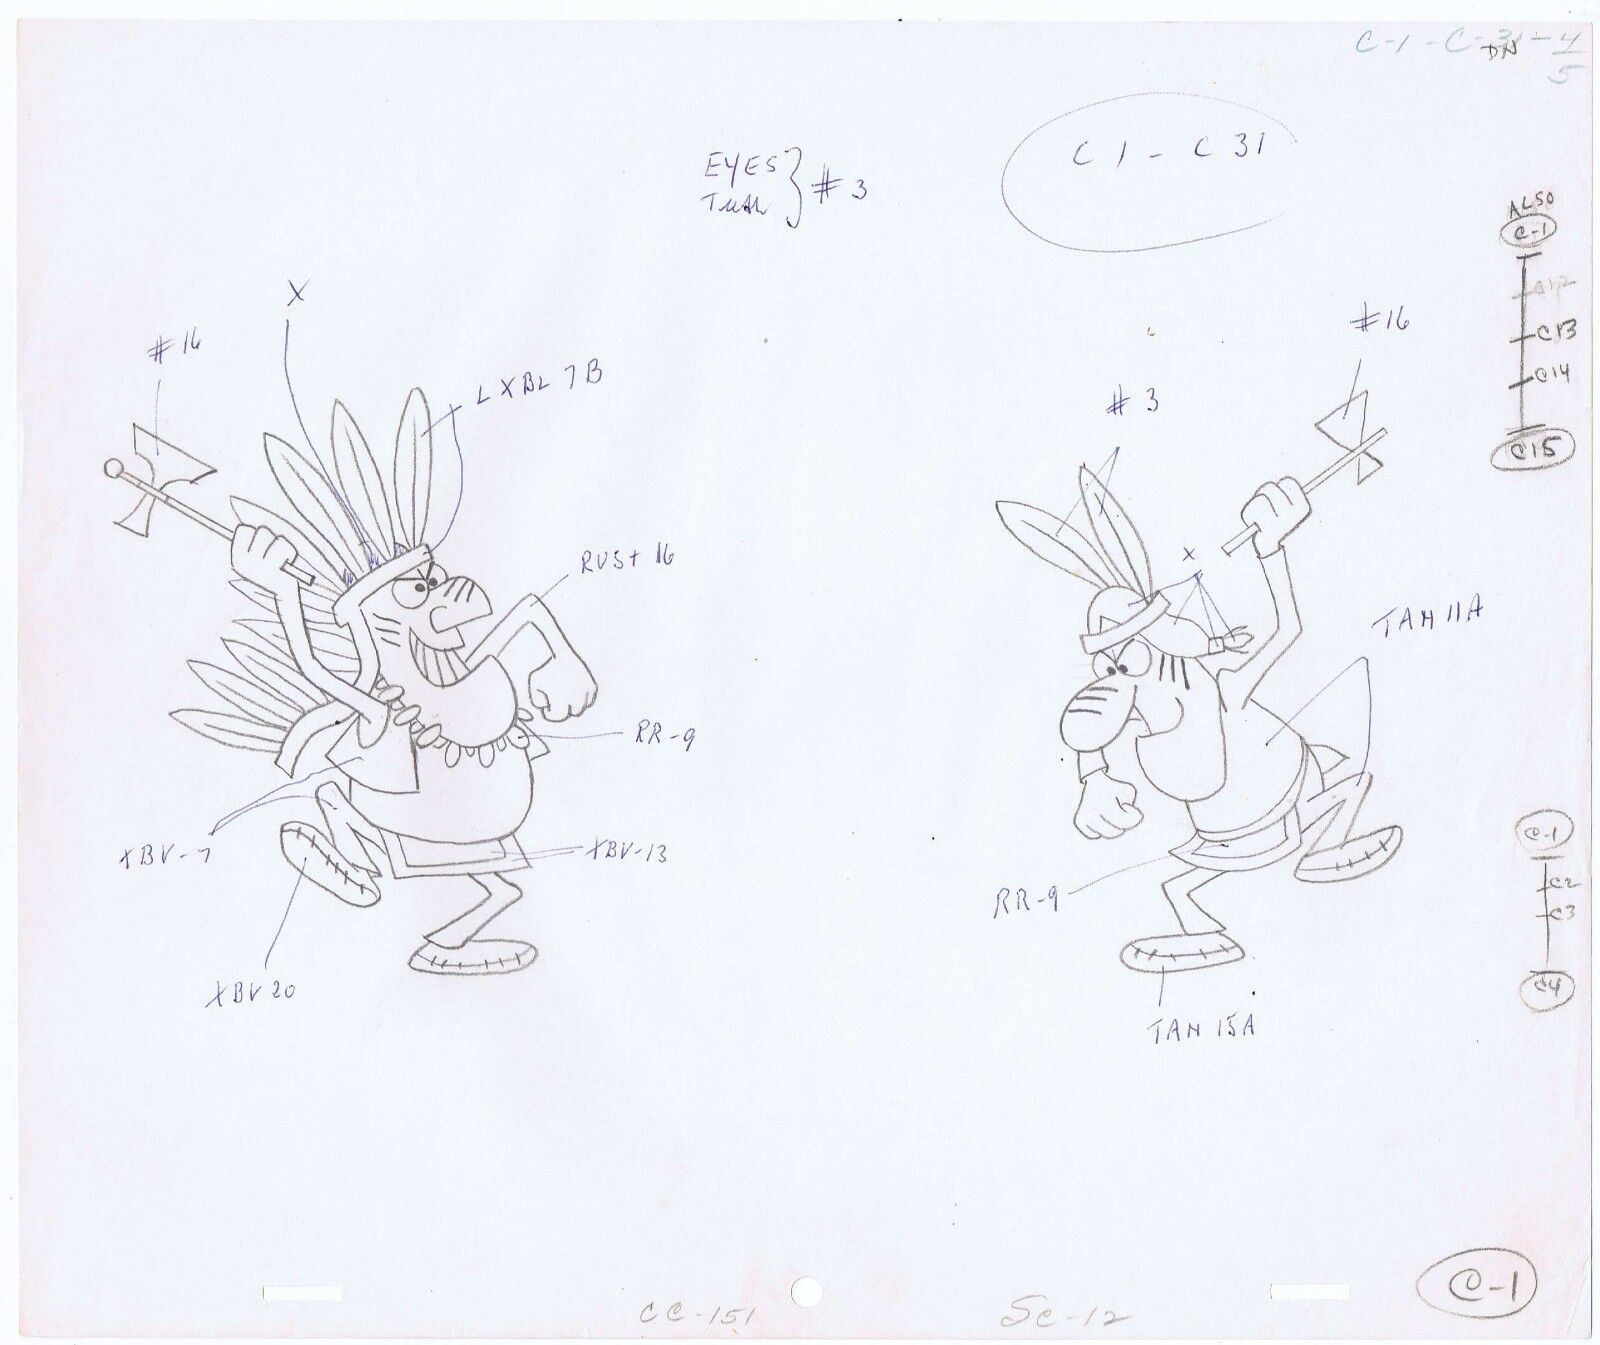 Cap'n Crunch Commercial Native Americans Pencil Concept Cel Art Guide CC-151